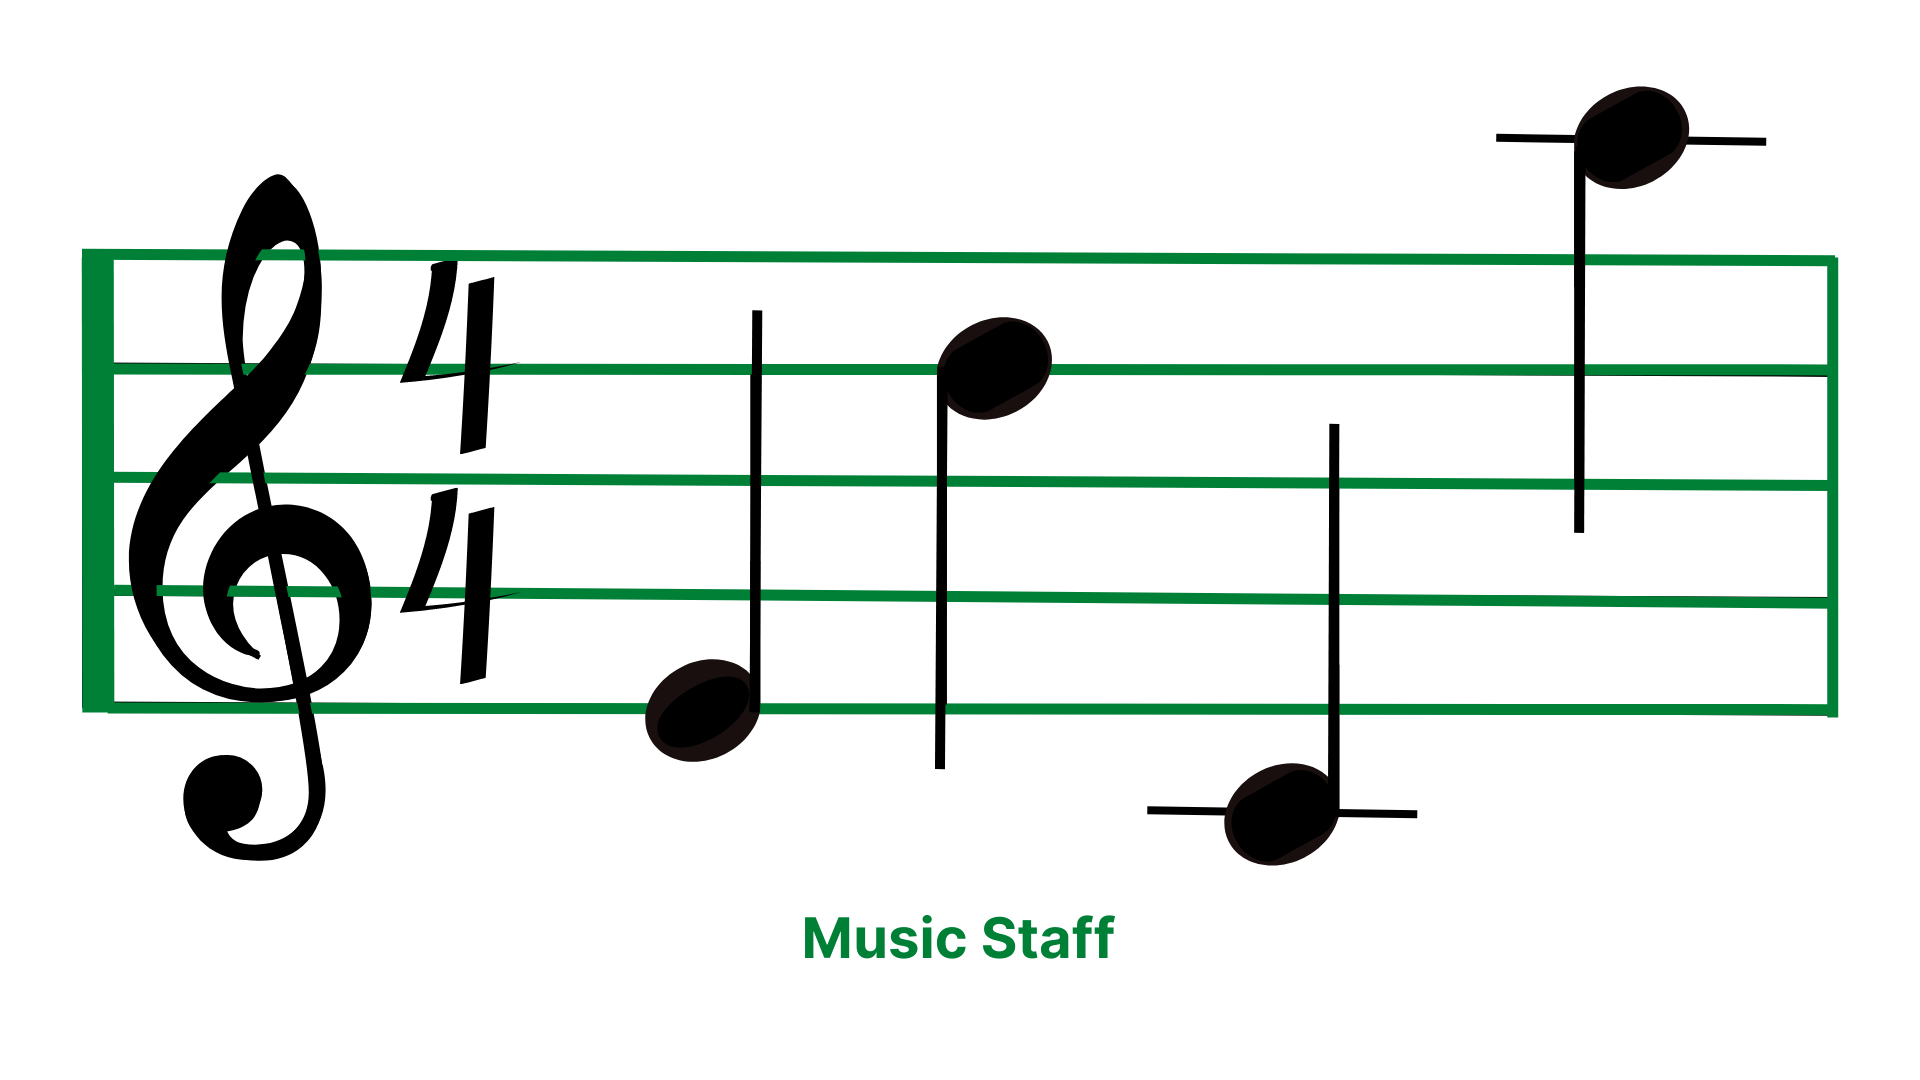 Music Staff